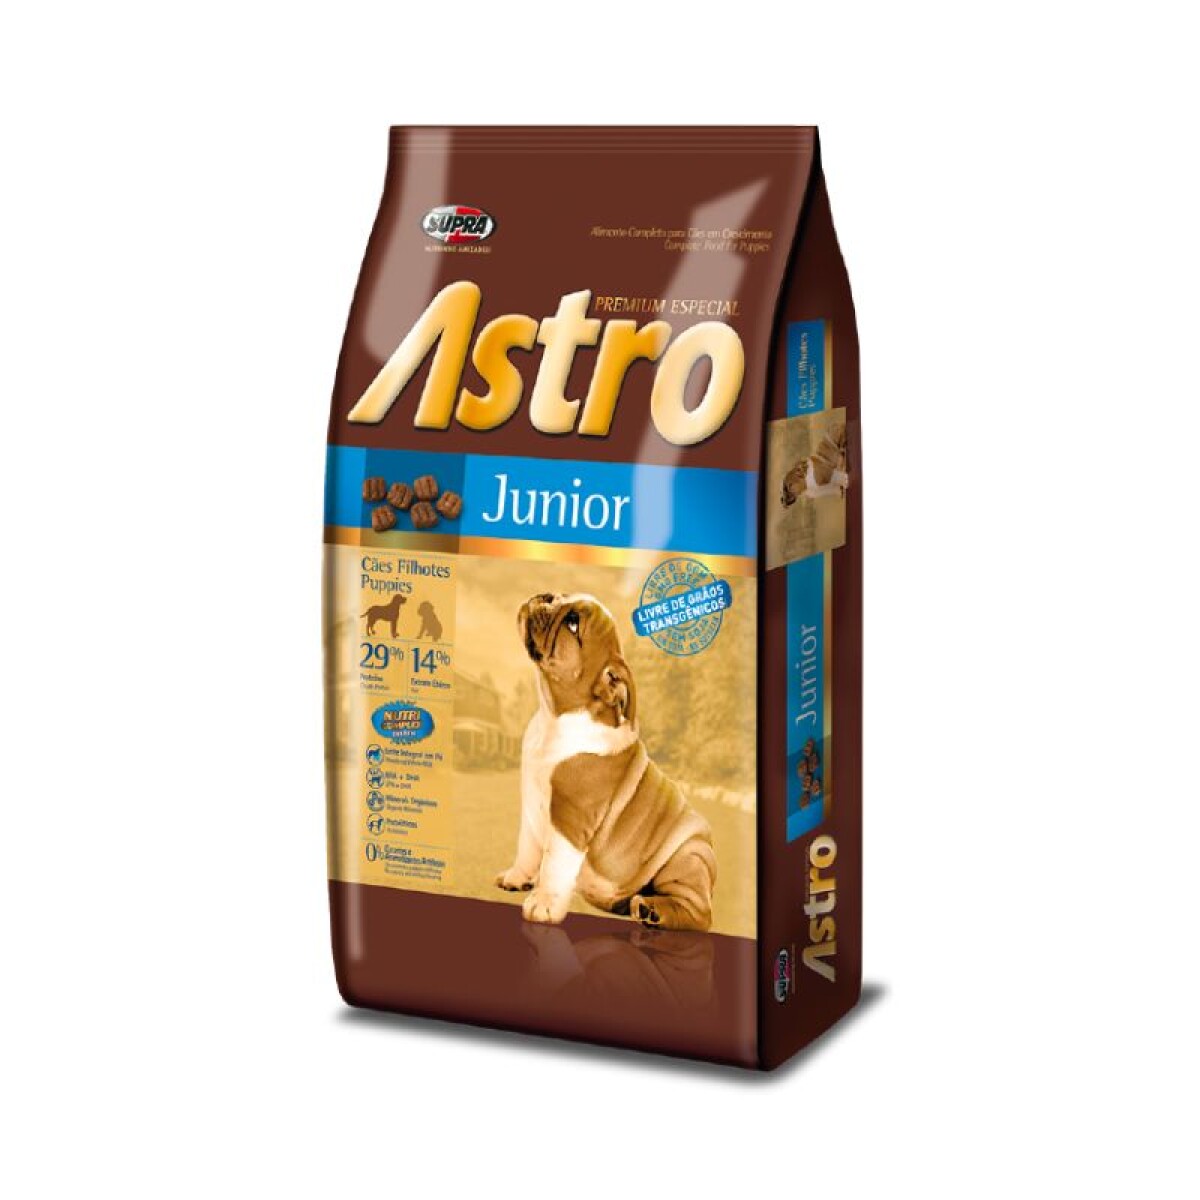 ASTRO JUNIOR 1KG - Astro Junior 1kg 